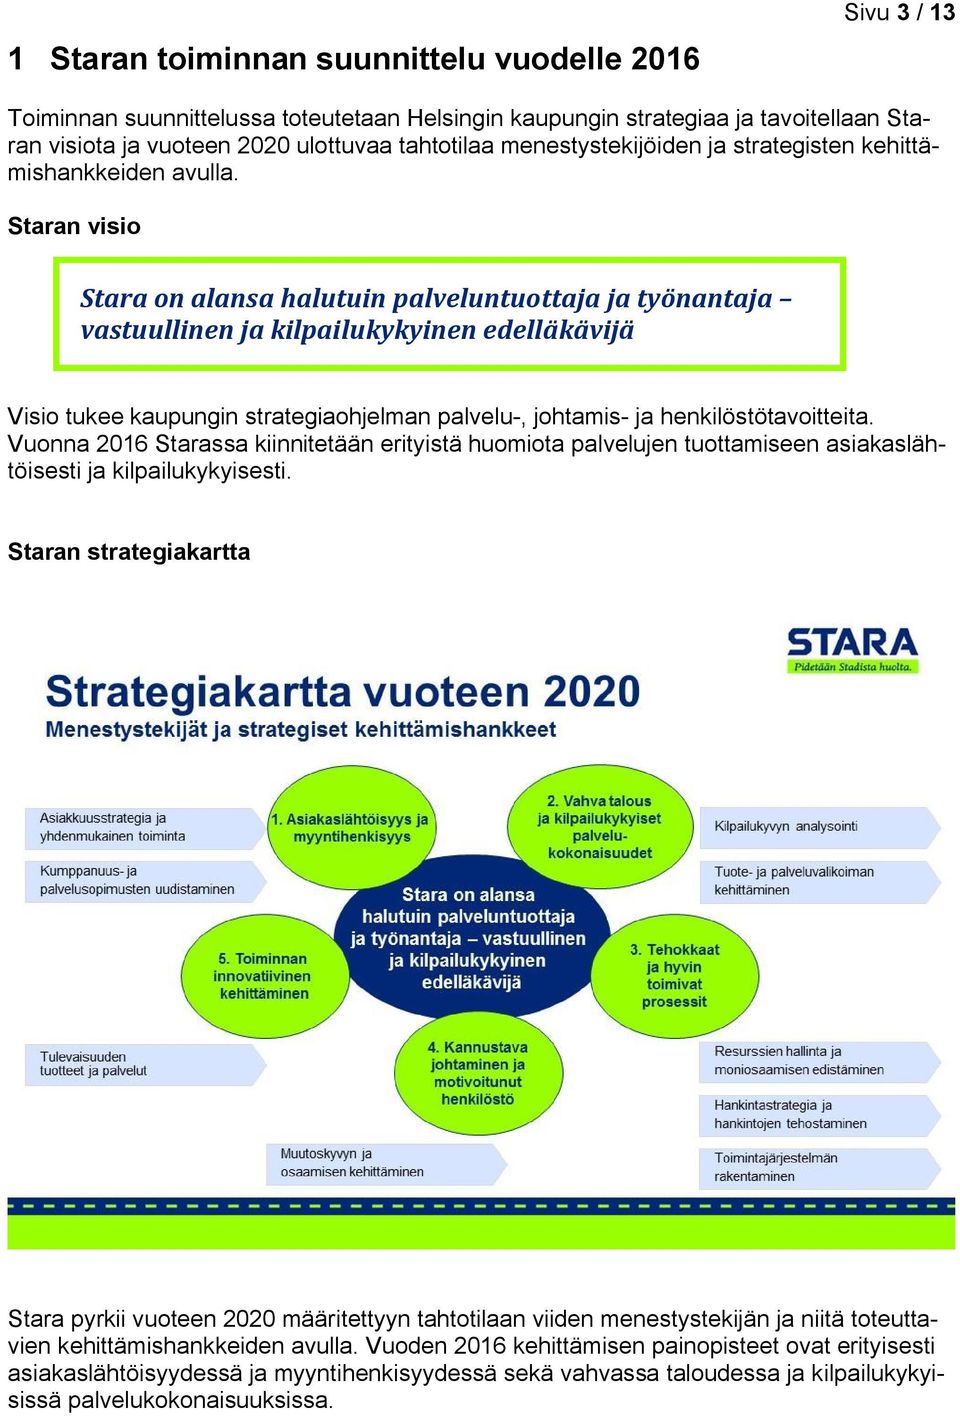 Staran visio Stara on alansa halutuin palveluntuottaja ja työnantaja vastuullinen ja kilpailukykyinen edelläkävijä Visio tukee kaupungin strategiaohjelman palvelu-, johtamis- ja henkilöstötavoitteita.